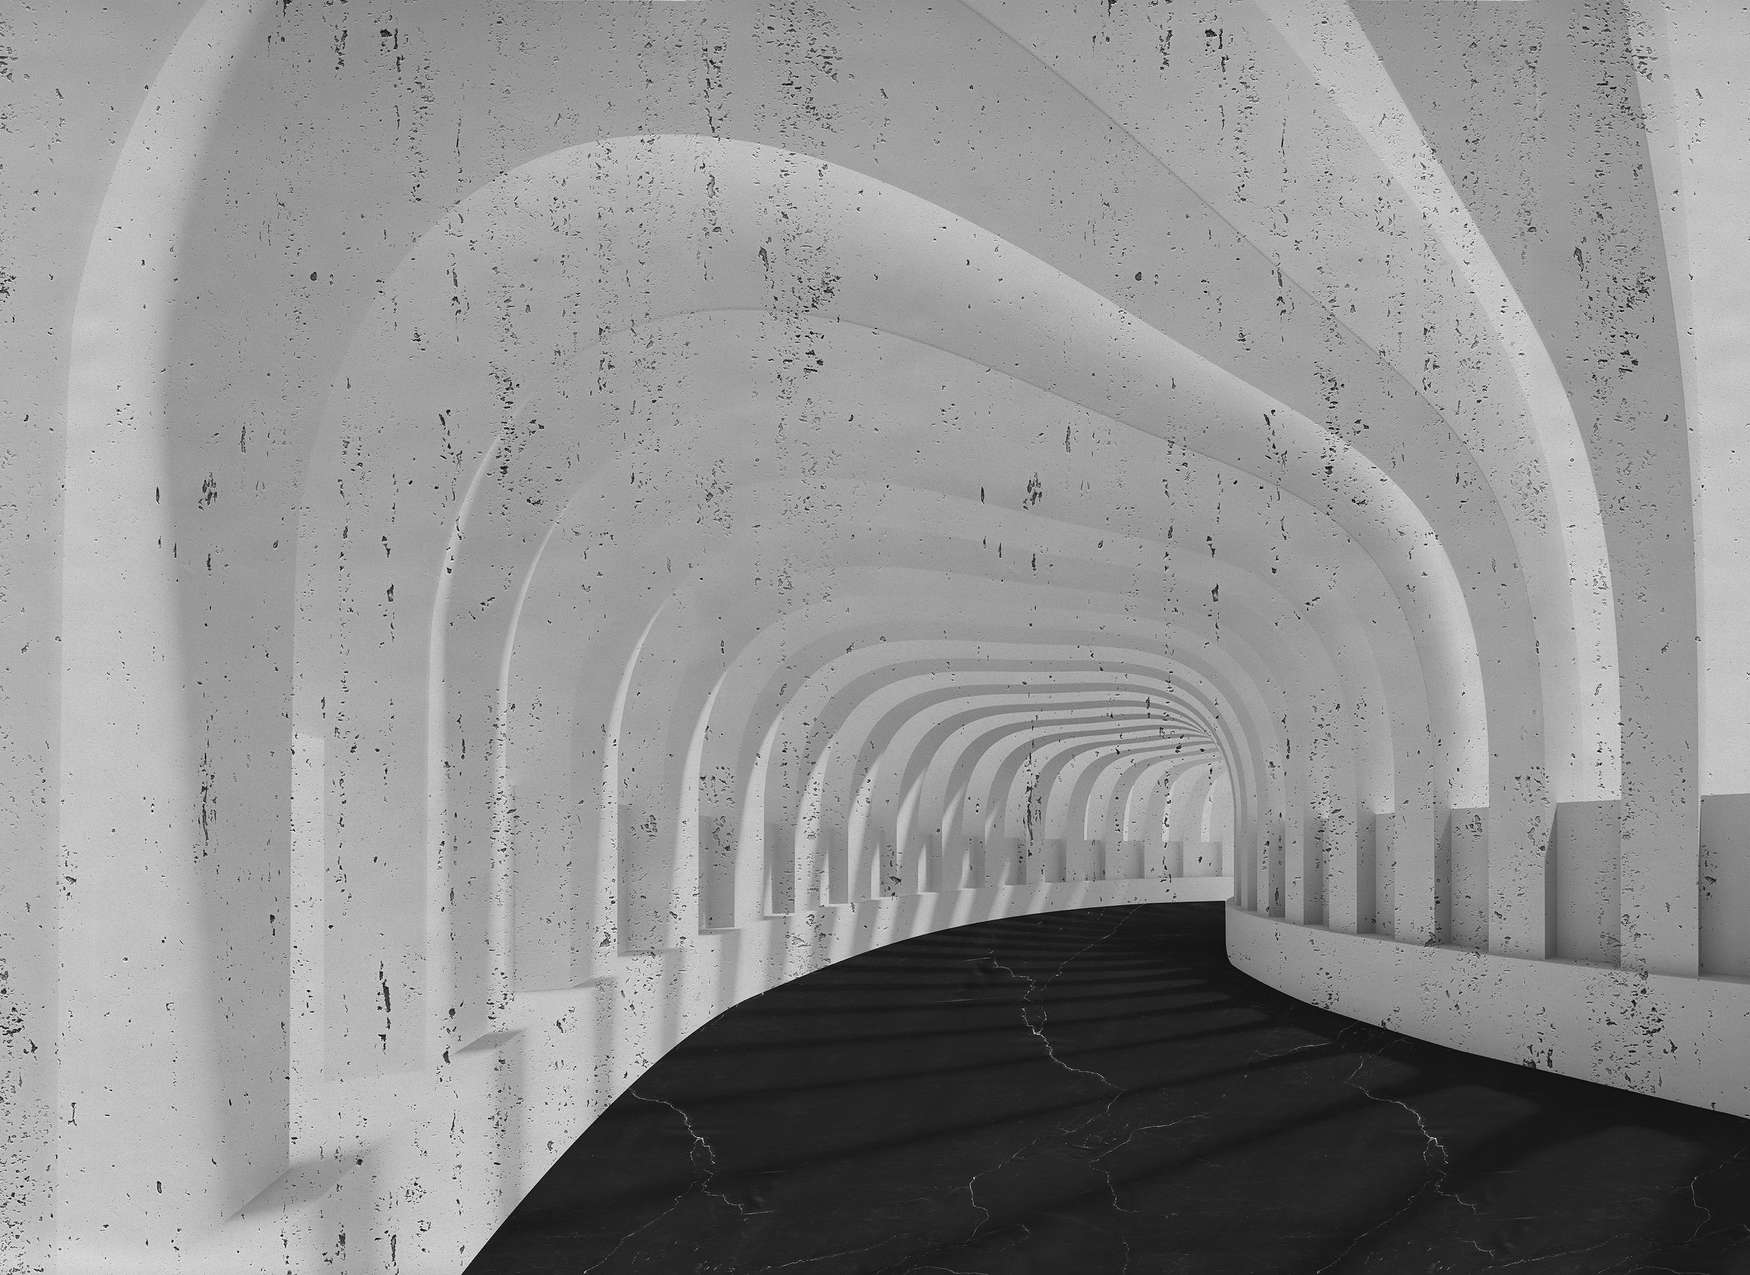             Mural 3D Túnel de hormigón con arcos - Gris, Negro
        